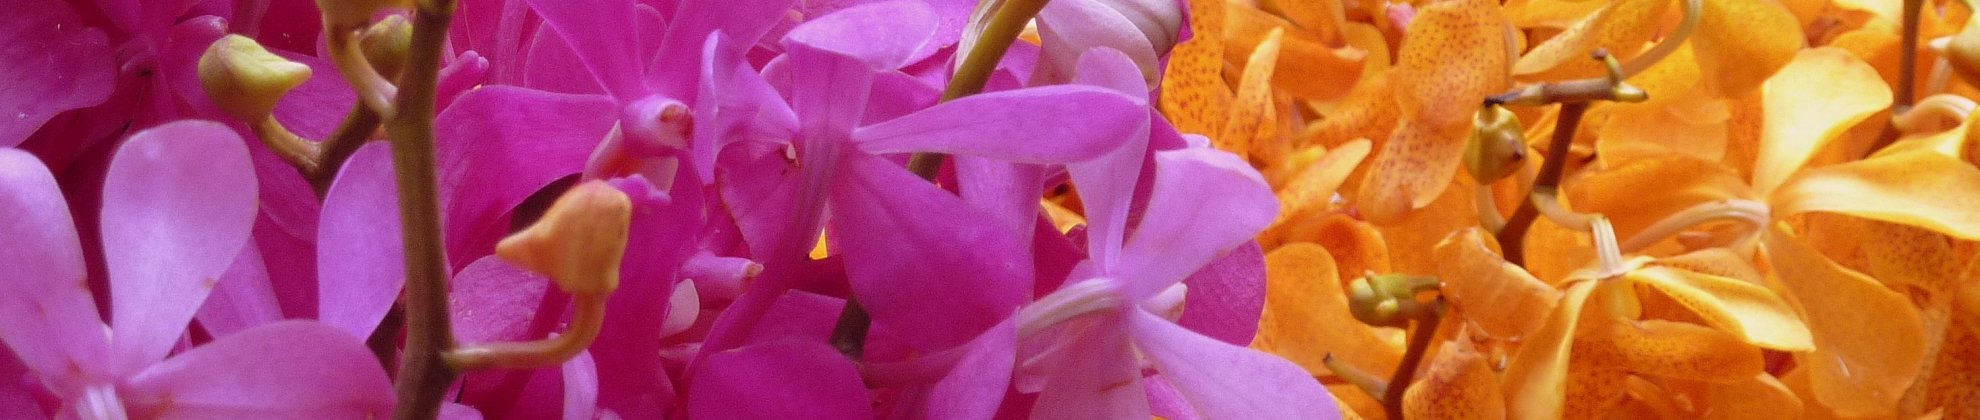 Thailand Nordthailand Chiang Mai Corinna Gogel 2017 Markt Orchideen